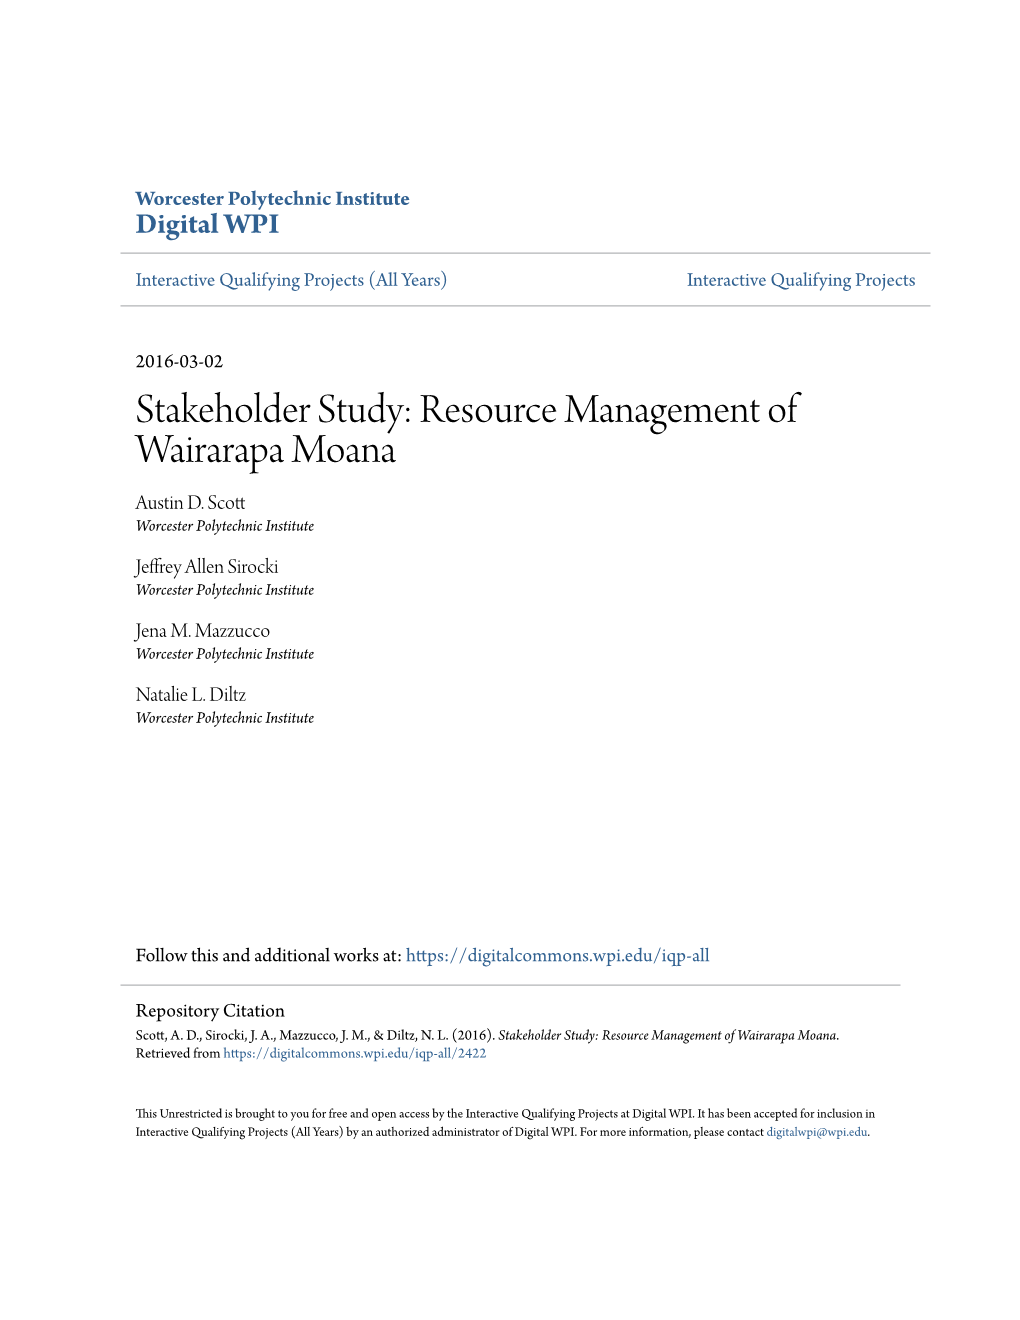 Stakeholder Study: Resource Management of Wairarapa Moana Austin D